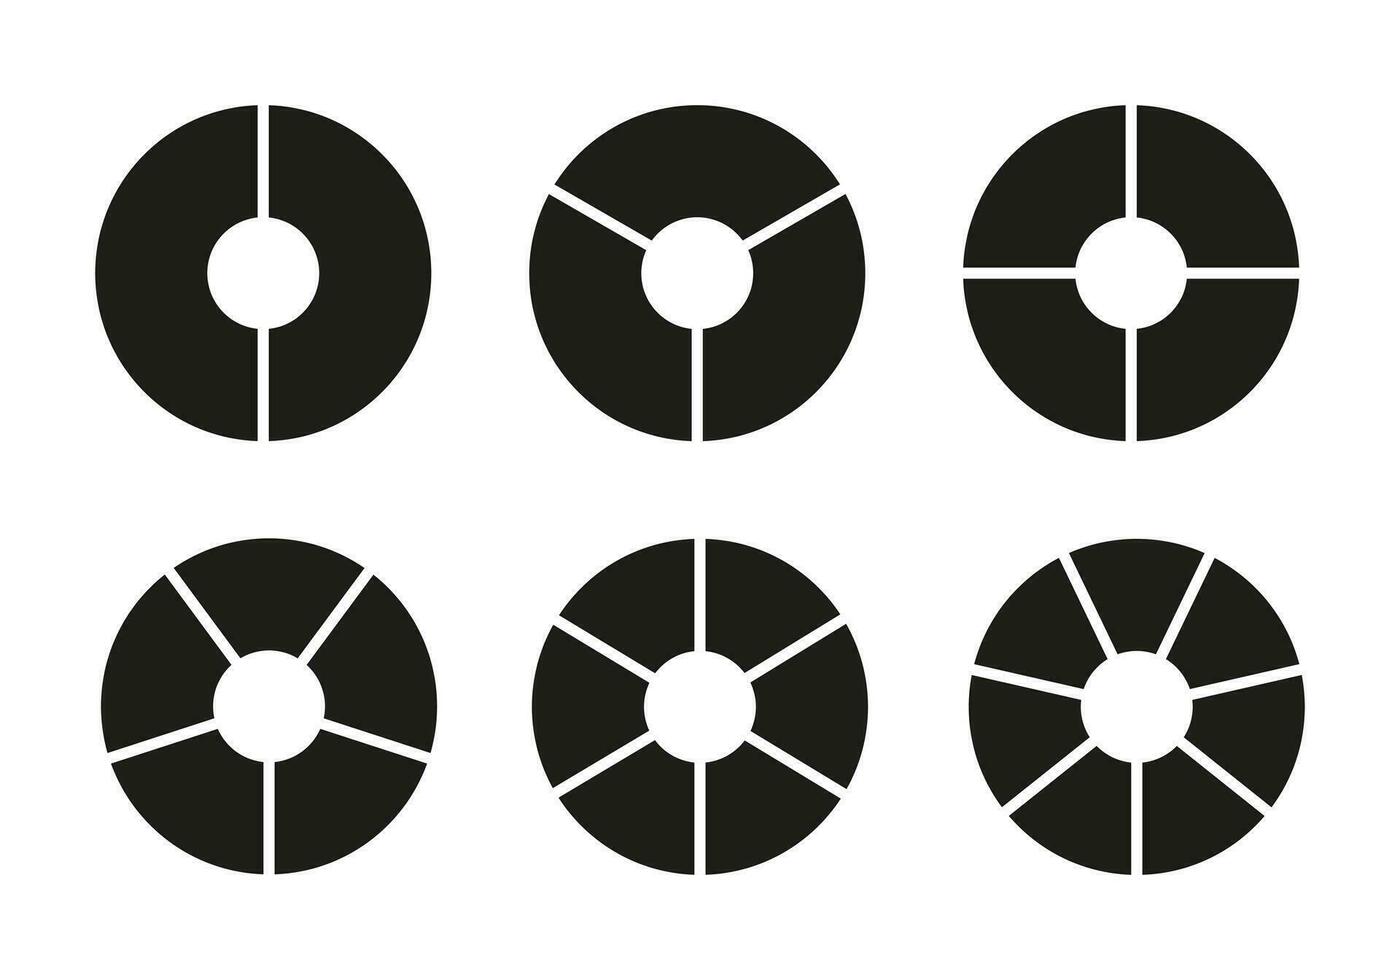 círculo divisão em 2, 3, 4, 5, 6, 7 igual peças. roda volta dividido diagramas com dois, três, quatro, cinco, seis, Sete segmentos. infográfico definir. rosquinha gráficos, tortas segmentado em igual peças. vetor